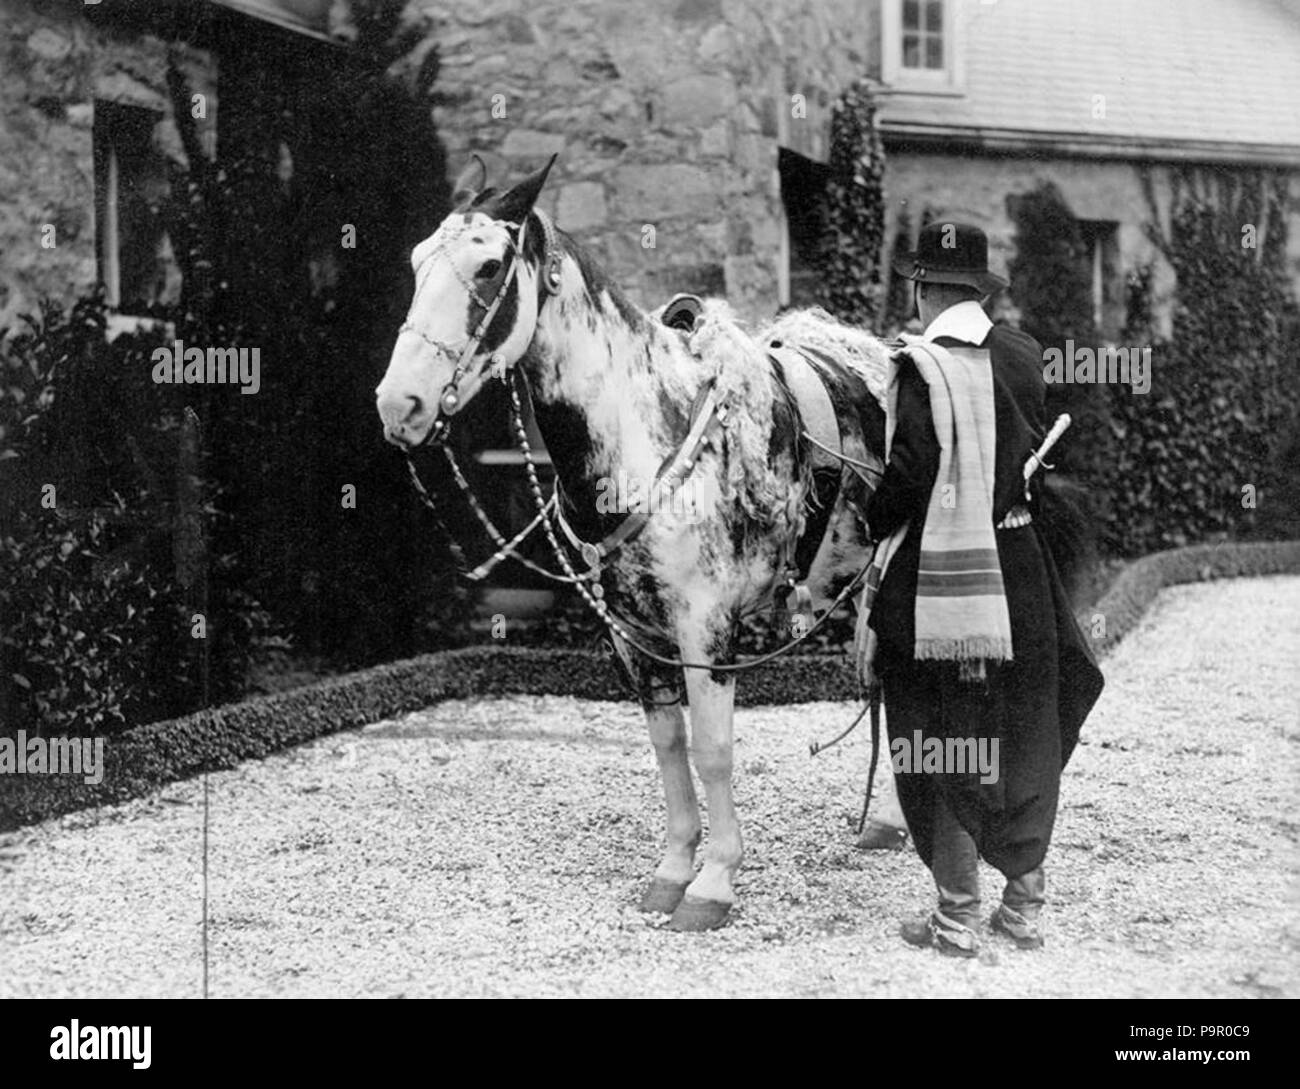 149 Archivo General de la Nación Argentina 1927 cabalgata en caballos criollos Stock Photo